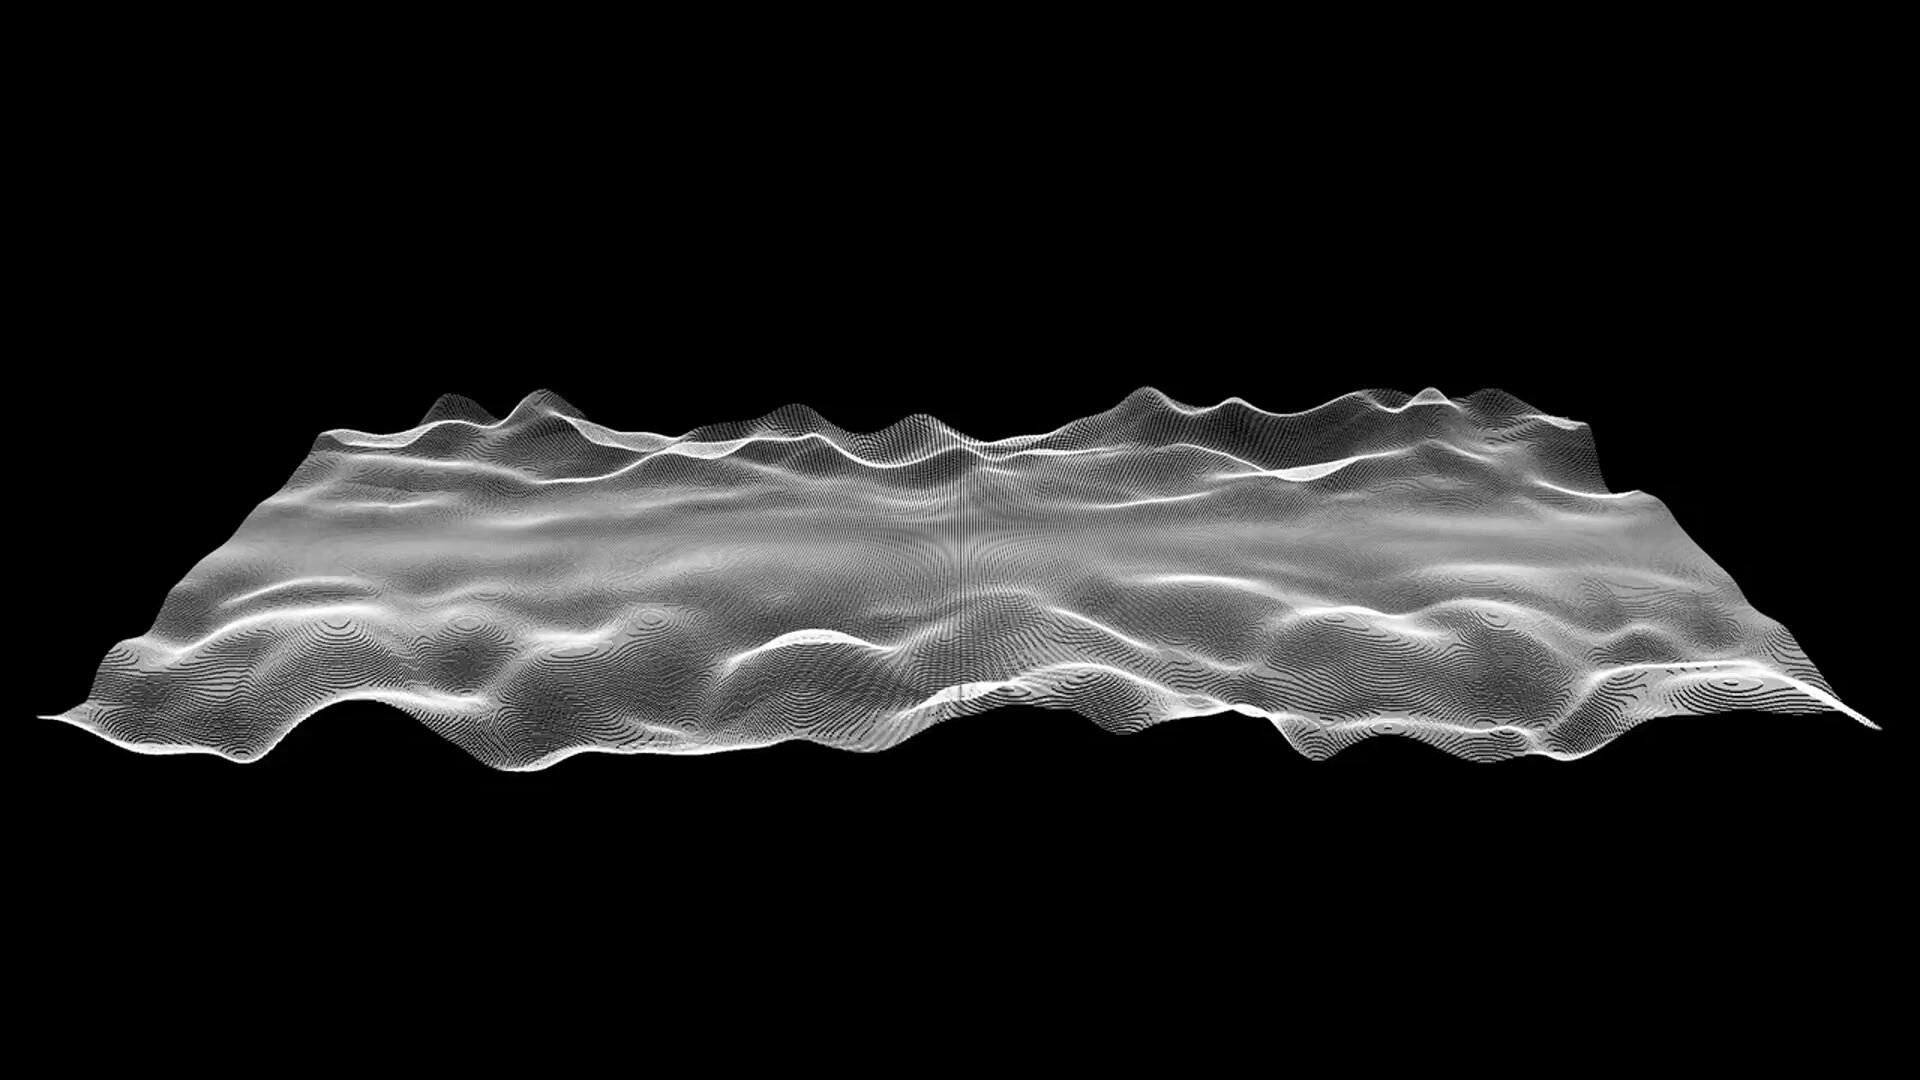 FCPX插件：复古美学黑白科幻几何抽象运动元素纹理循环背景素材（10163）图层云